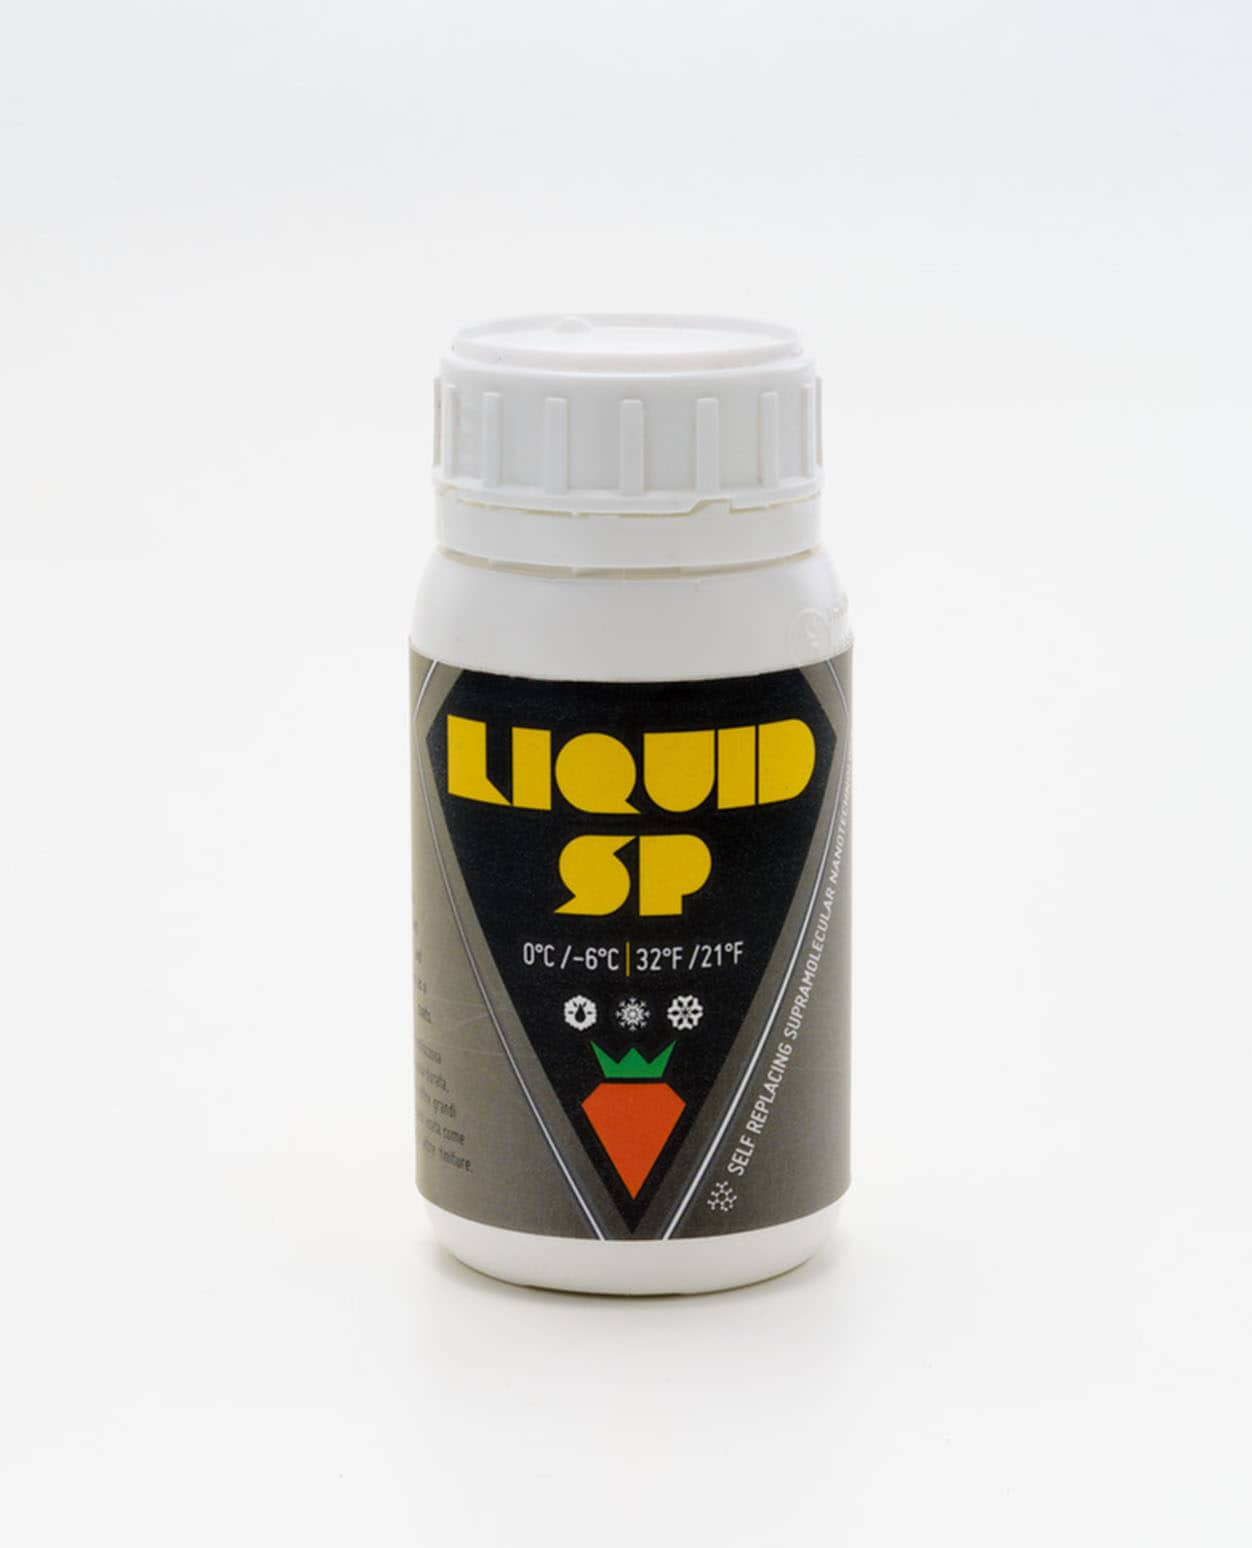 Carrot Liquid Surfactant Plus 0°C/-6°C 